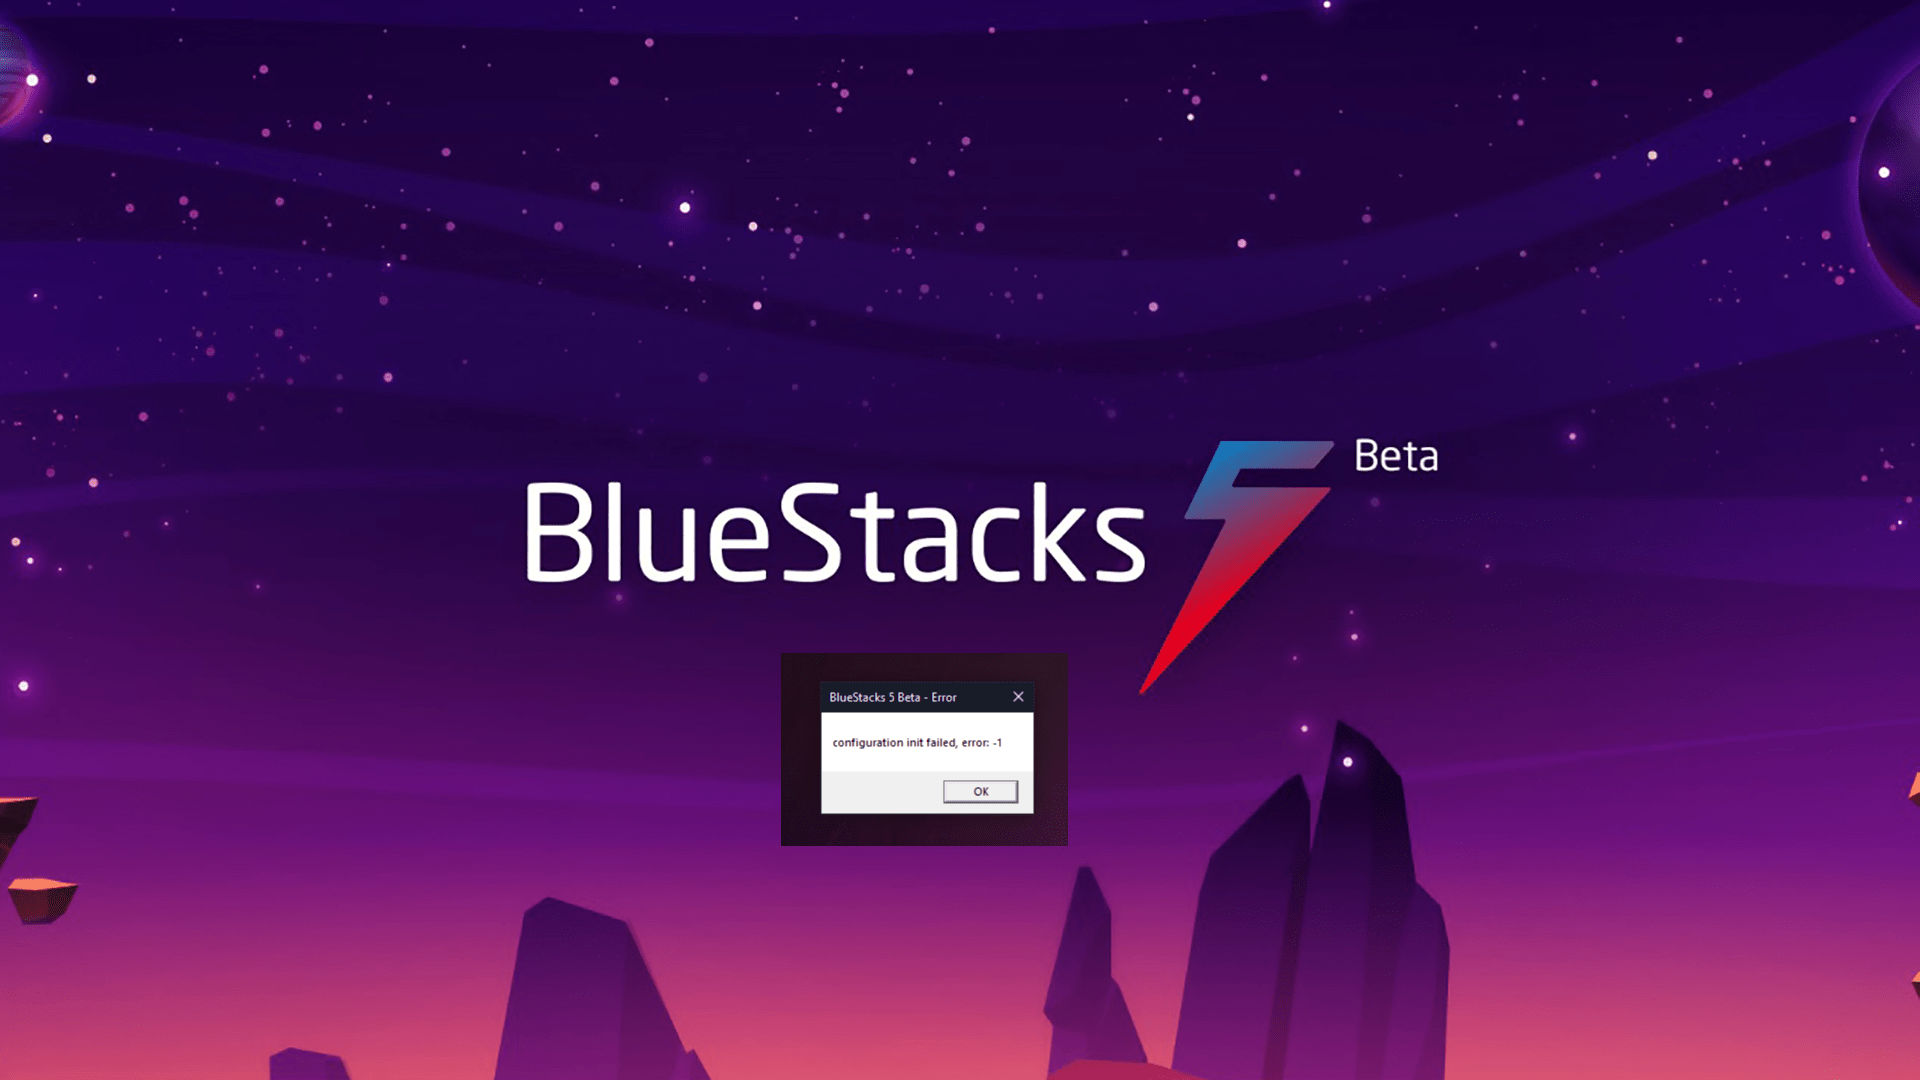 bluestacks 4 app crash fix